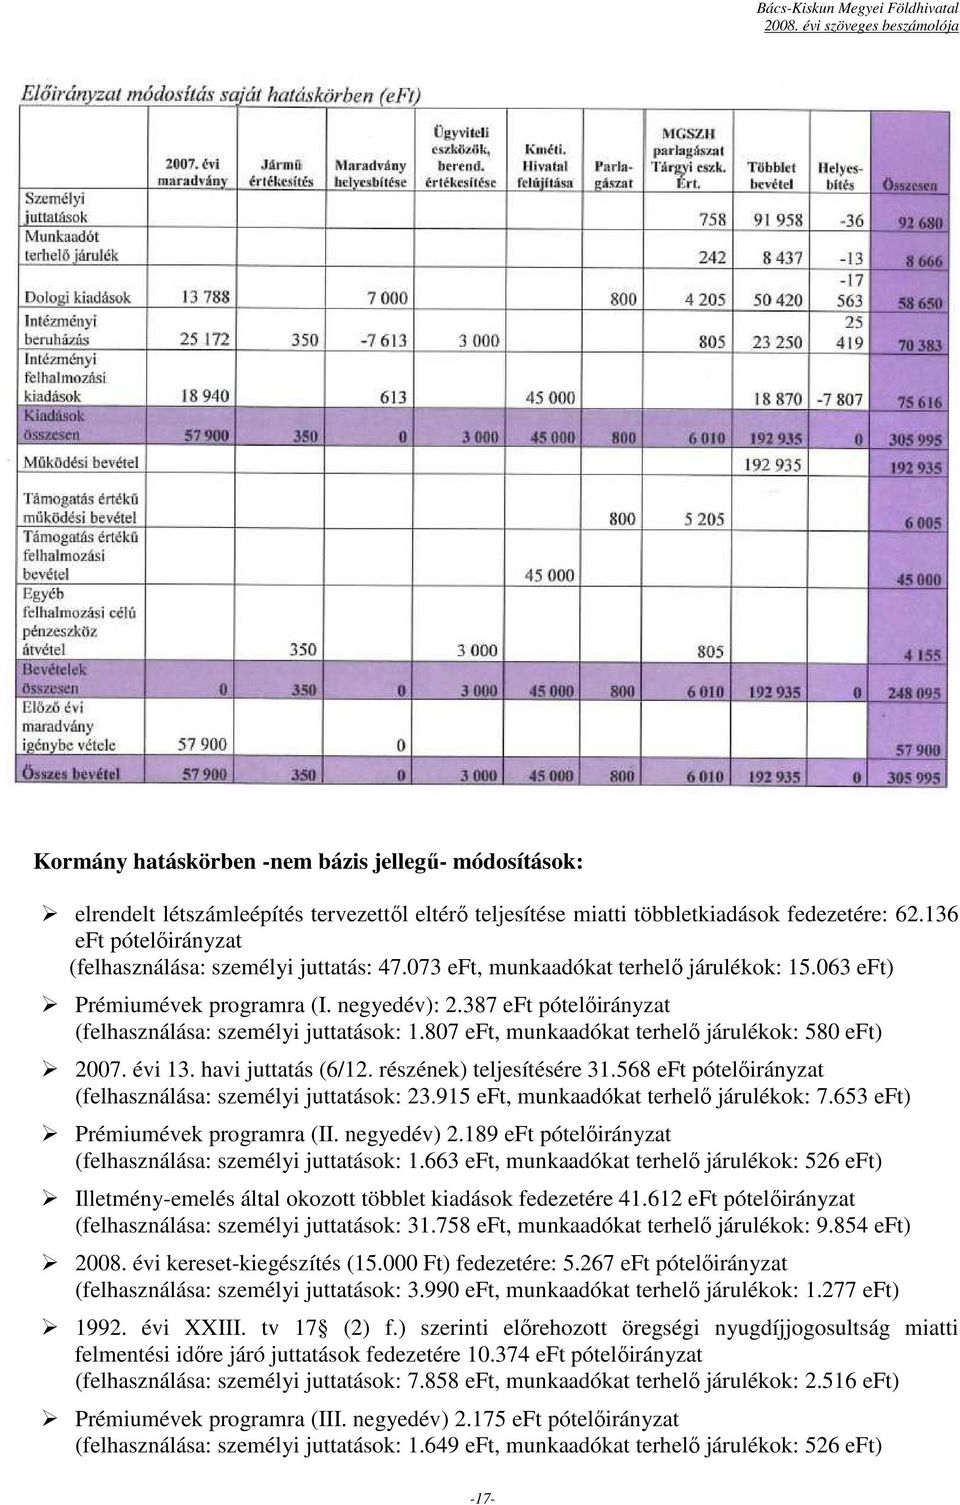 387 eft pótelıirányzat (felhasználása: személyi juttatások: 1.807 eft, munkaadókat terhelı járulékok: 580 eft) 2007. évi 13. havi juttatás (6/12. részének) teljesítésére 31.